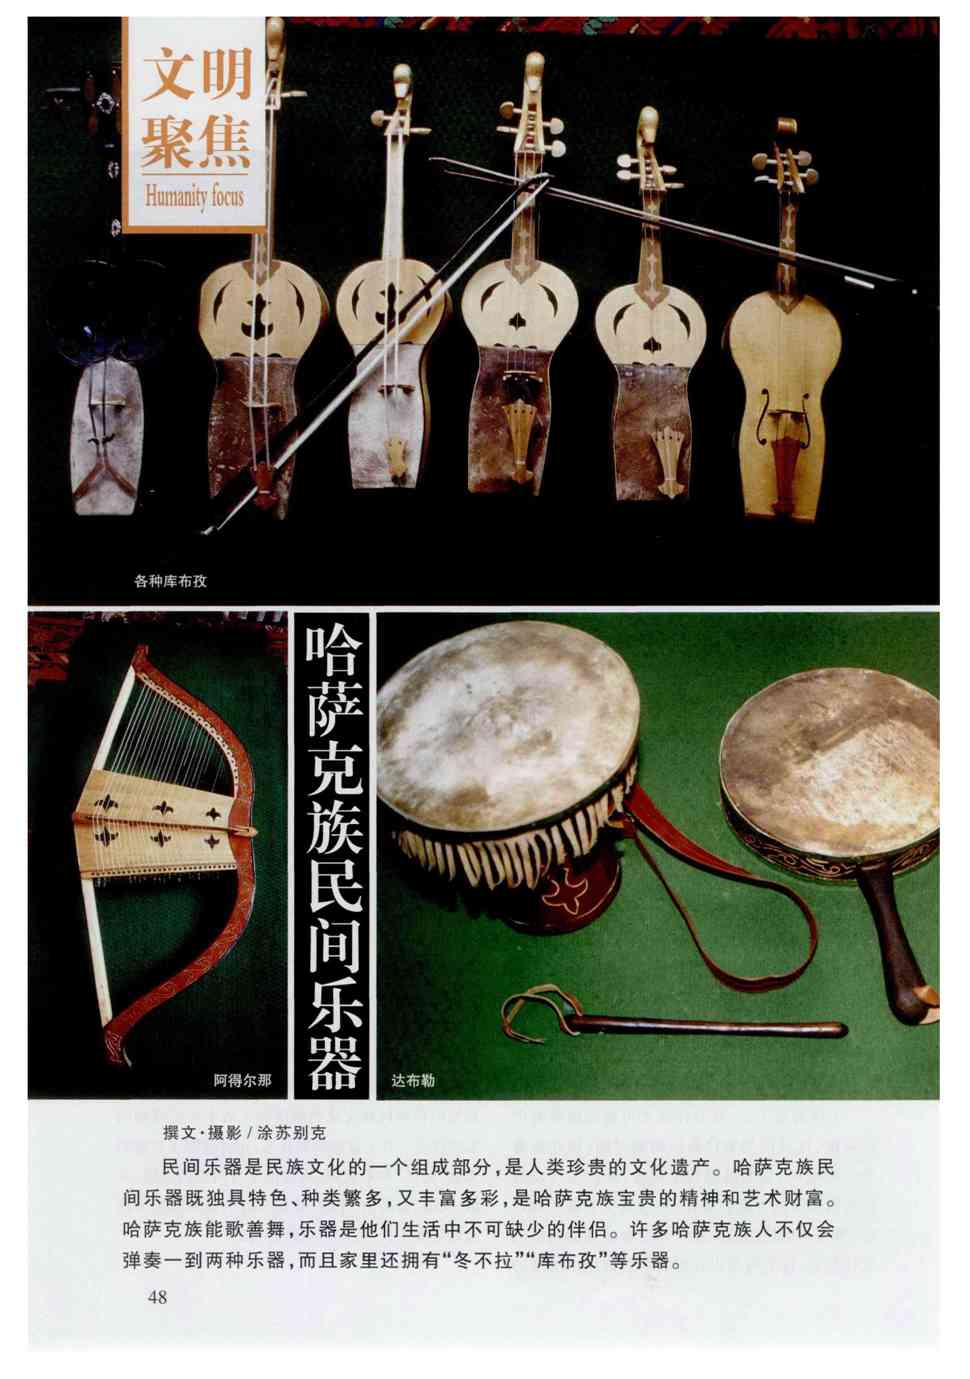 哈萨克族民间乐器既独具特色,种类繁多,又丰富多彩,是哈萨克族宝贵的